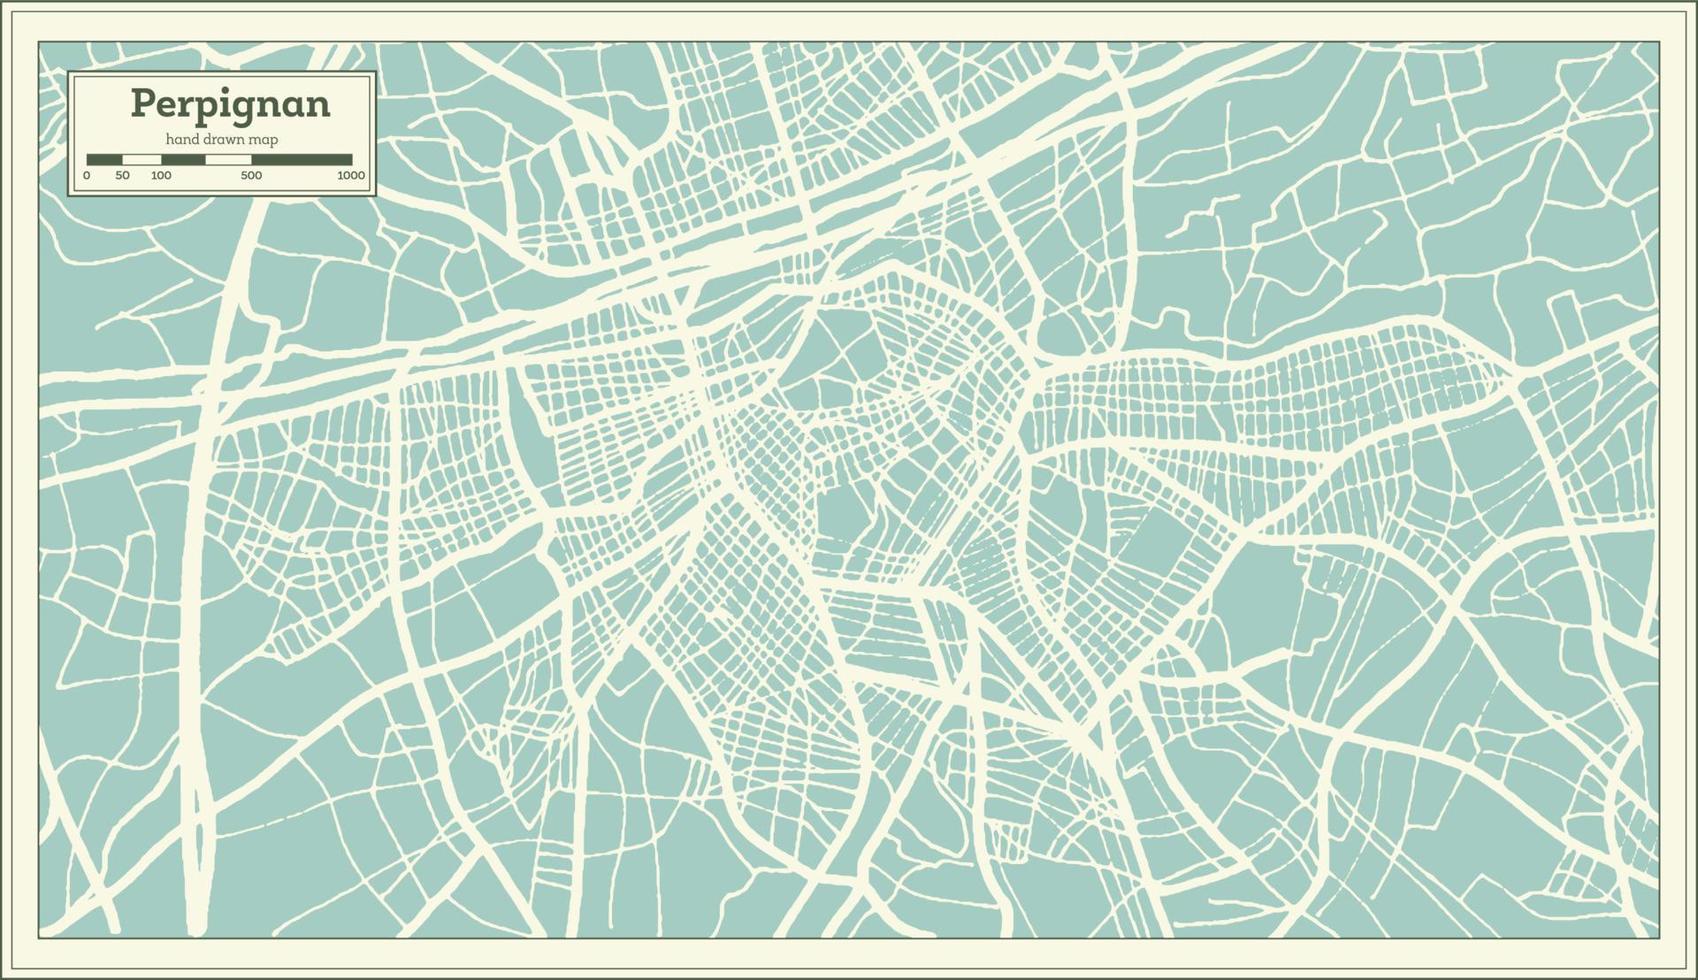 plan de la ville de perpignan france dans un style rétro. carte muette. illustration vectorielle. vecteur